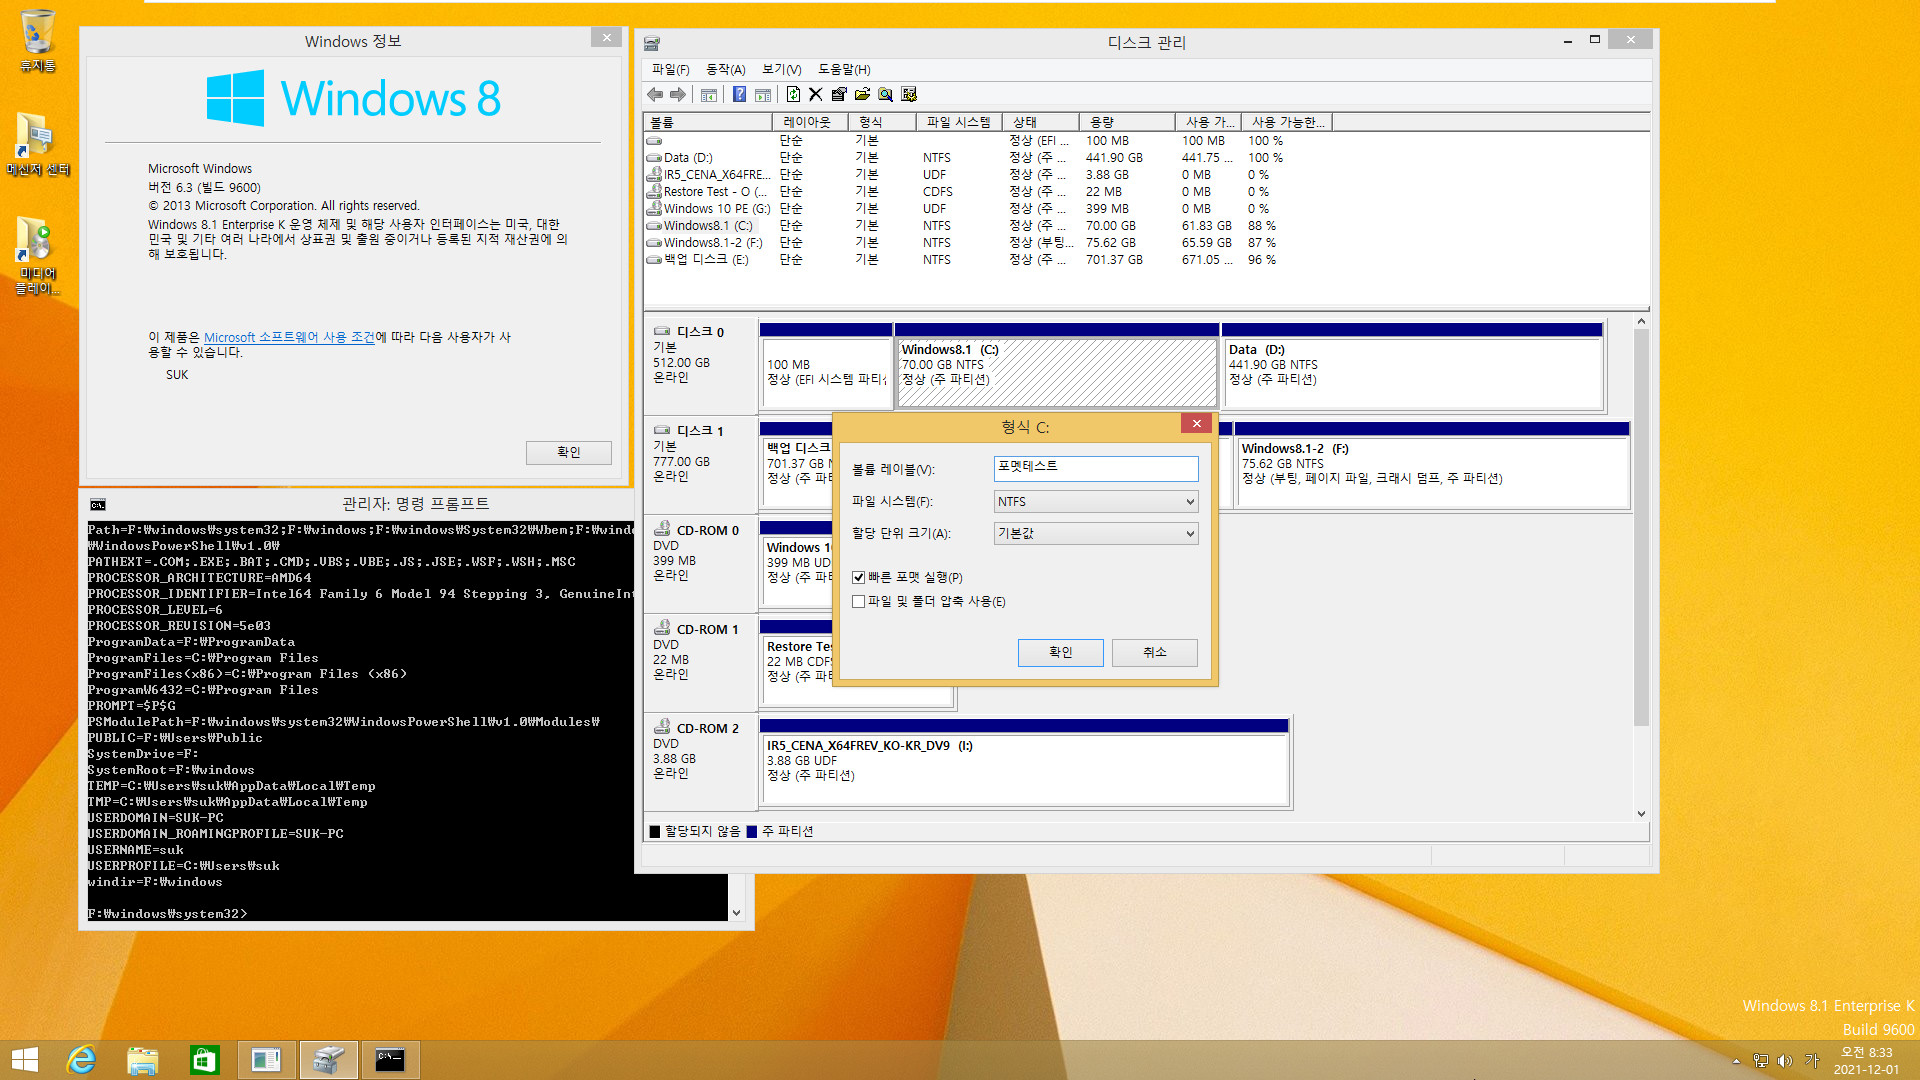 Windows 8.1은 여전히 같은 컴퓨터에서 다른 파티션에 복원하면 기존 윈도우와 복원한 윈도우 2개를 동시에 사용하는군요. 기존 C드라이브 문자만 삭제하면 정상 부팅됩니다 2021-12-01_083335.jpg